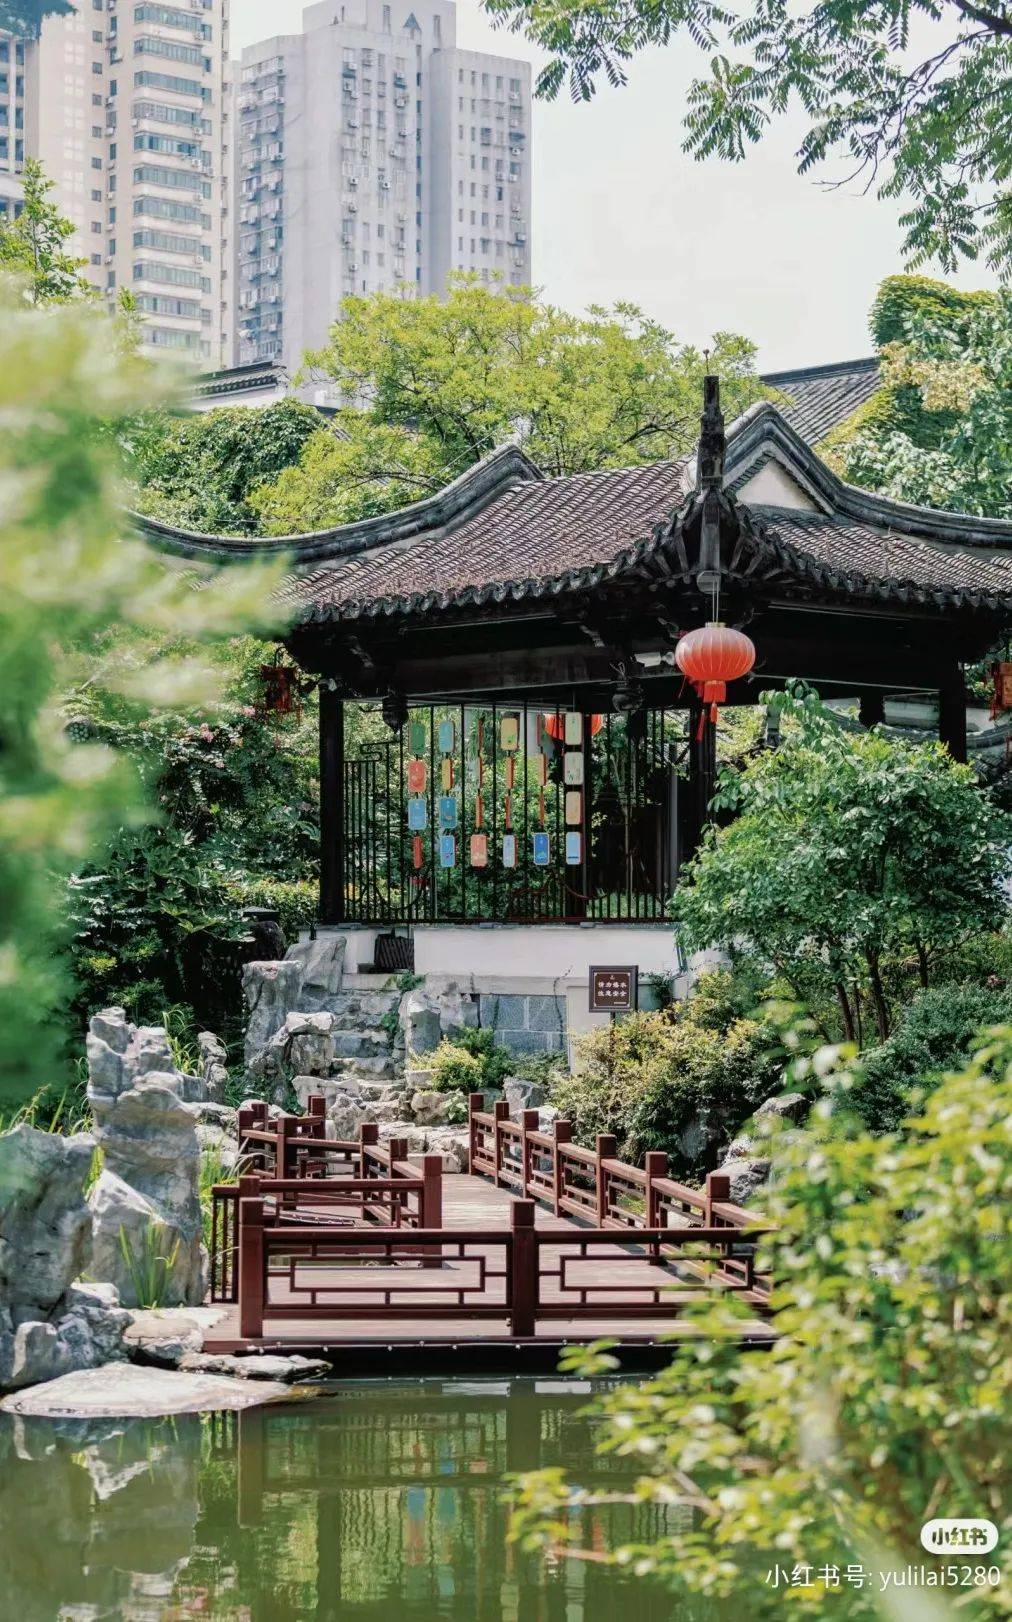 漫步甘家大院,人们可以领略传统南京民居建筑的优雅精致